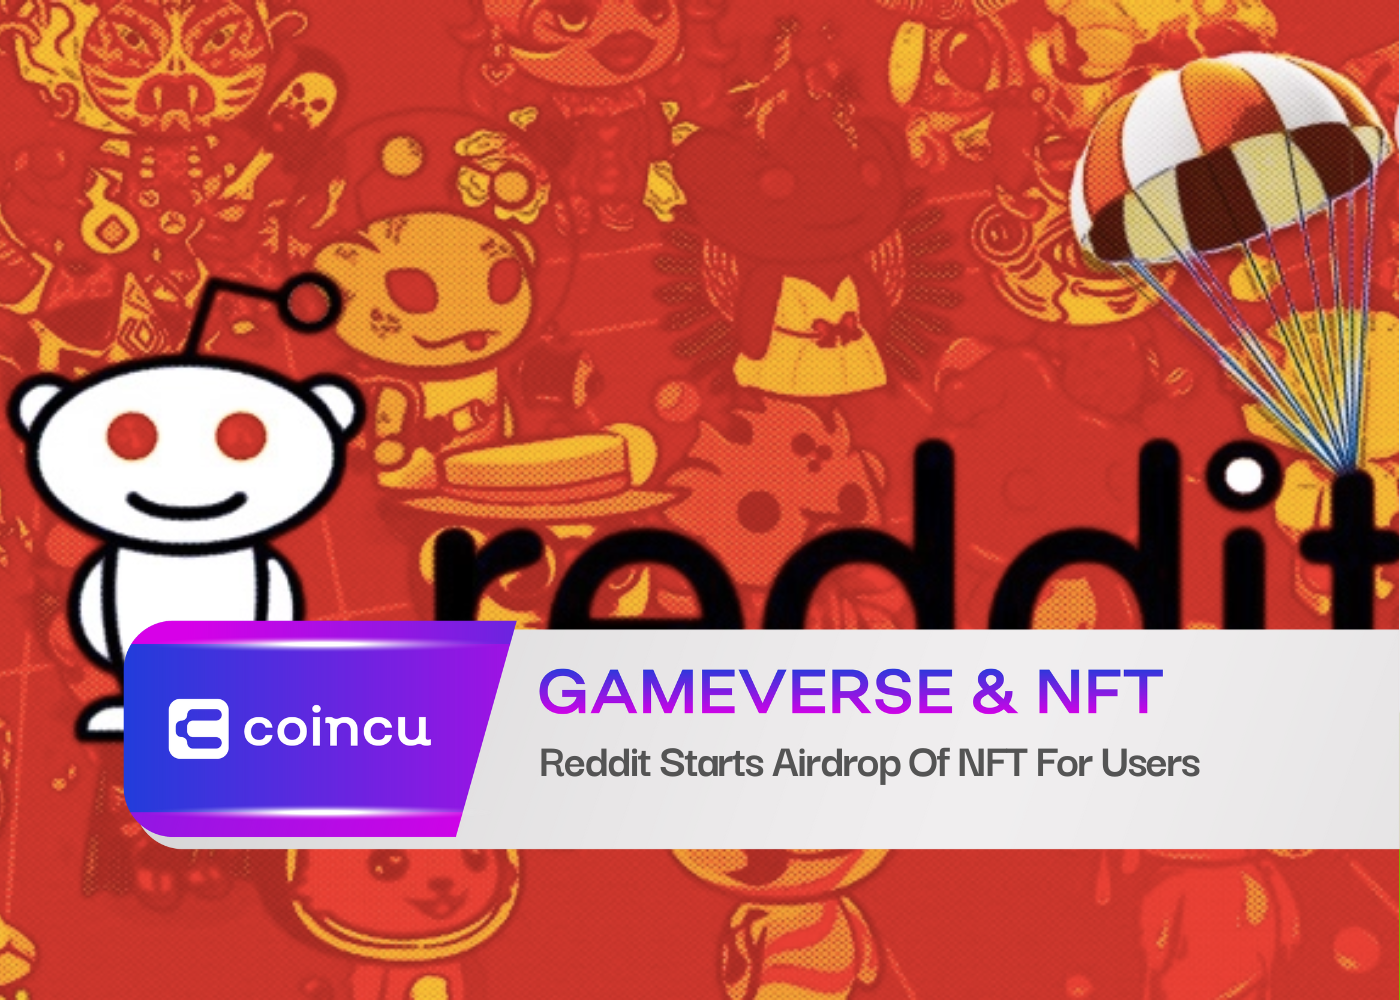 Reddit ने उपयोगकर्ताओं के लिए NFT का एयरड्रॉप शुरू किया